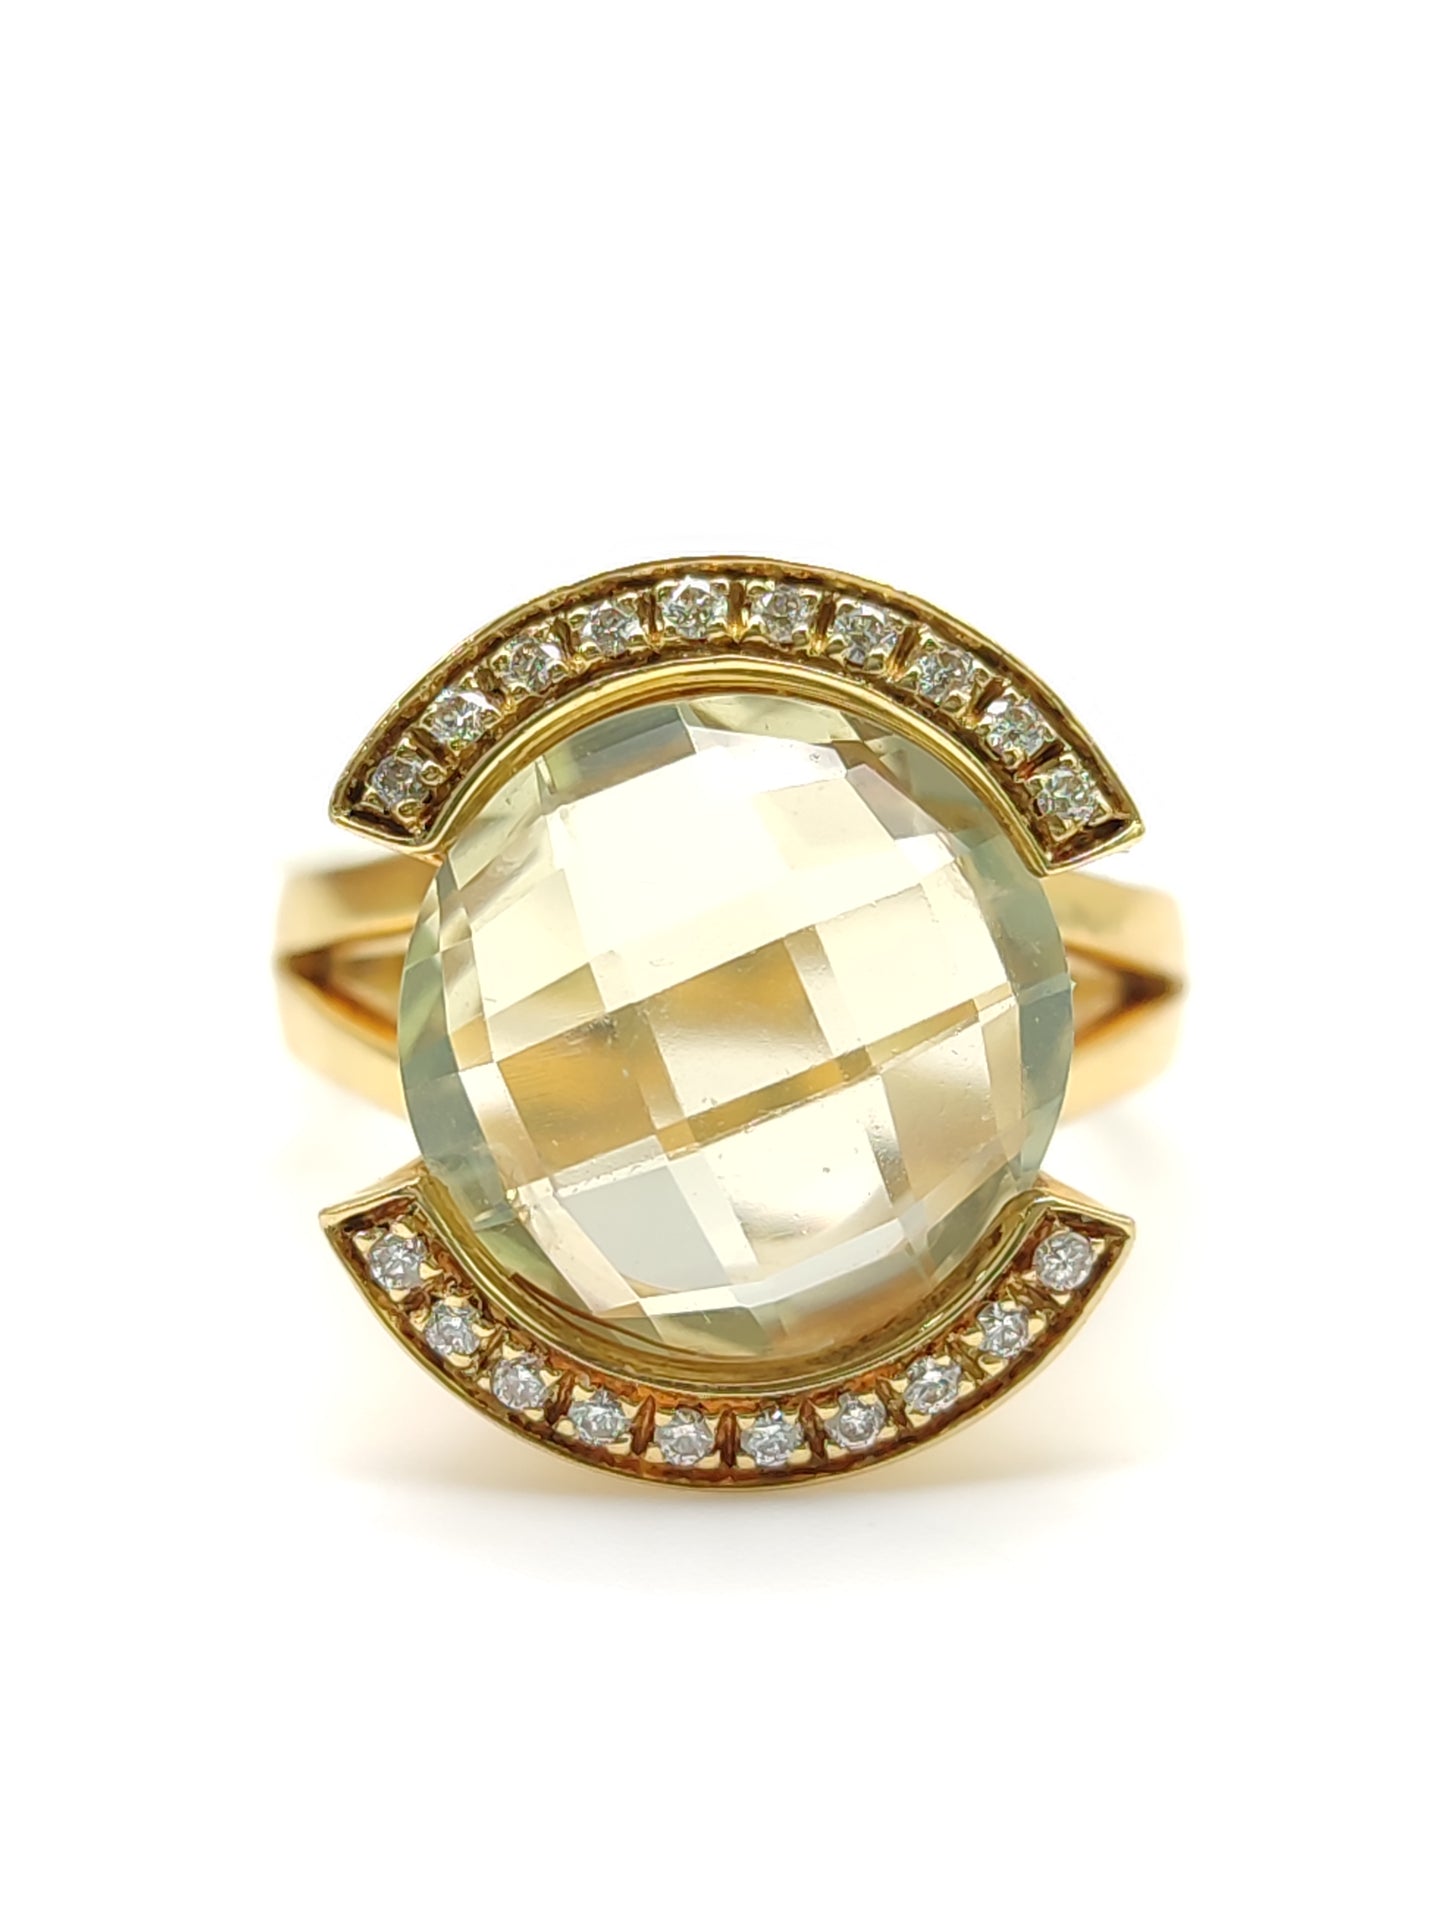 Pavan - Eliodoro ring and diamonds